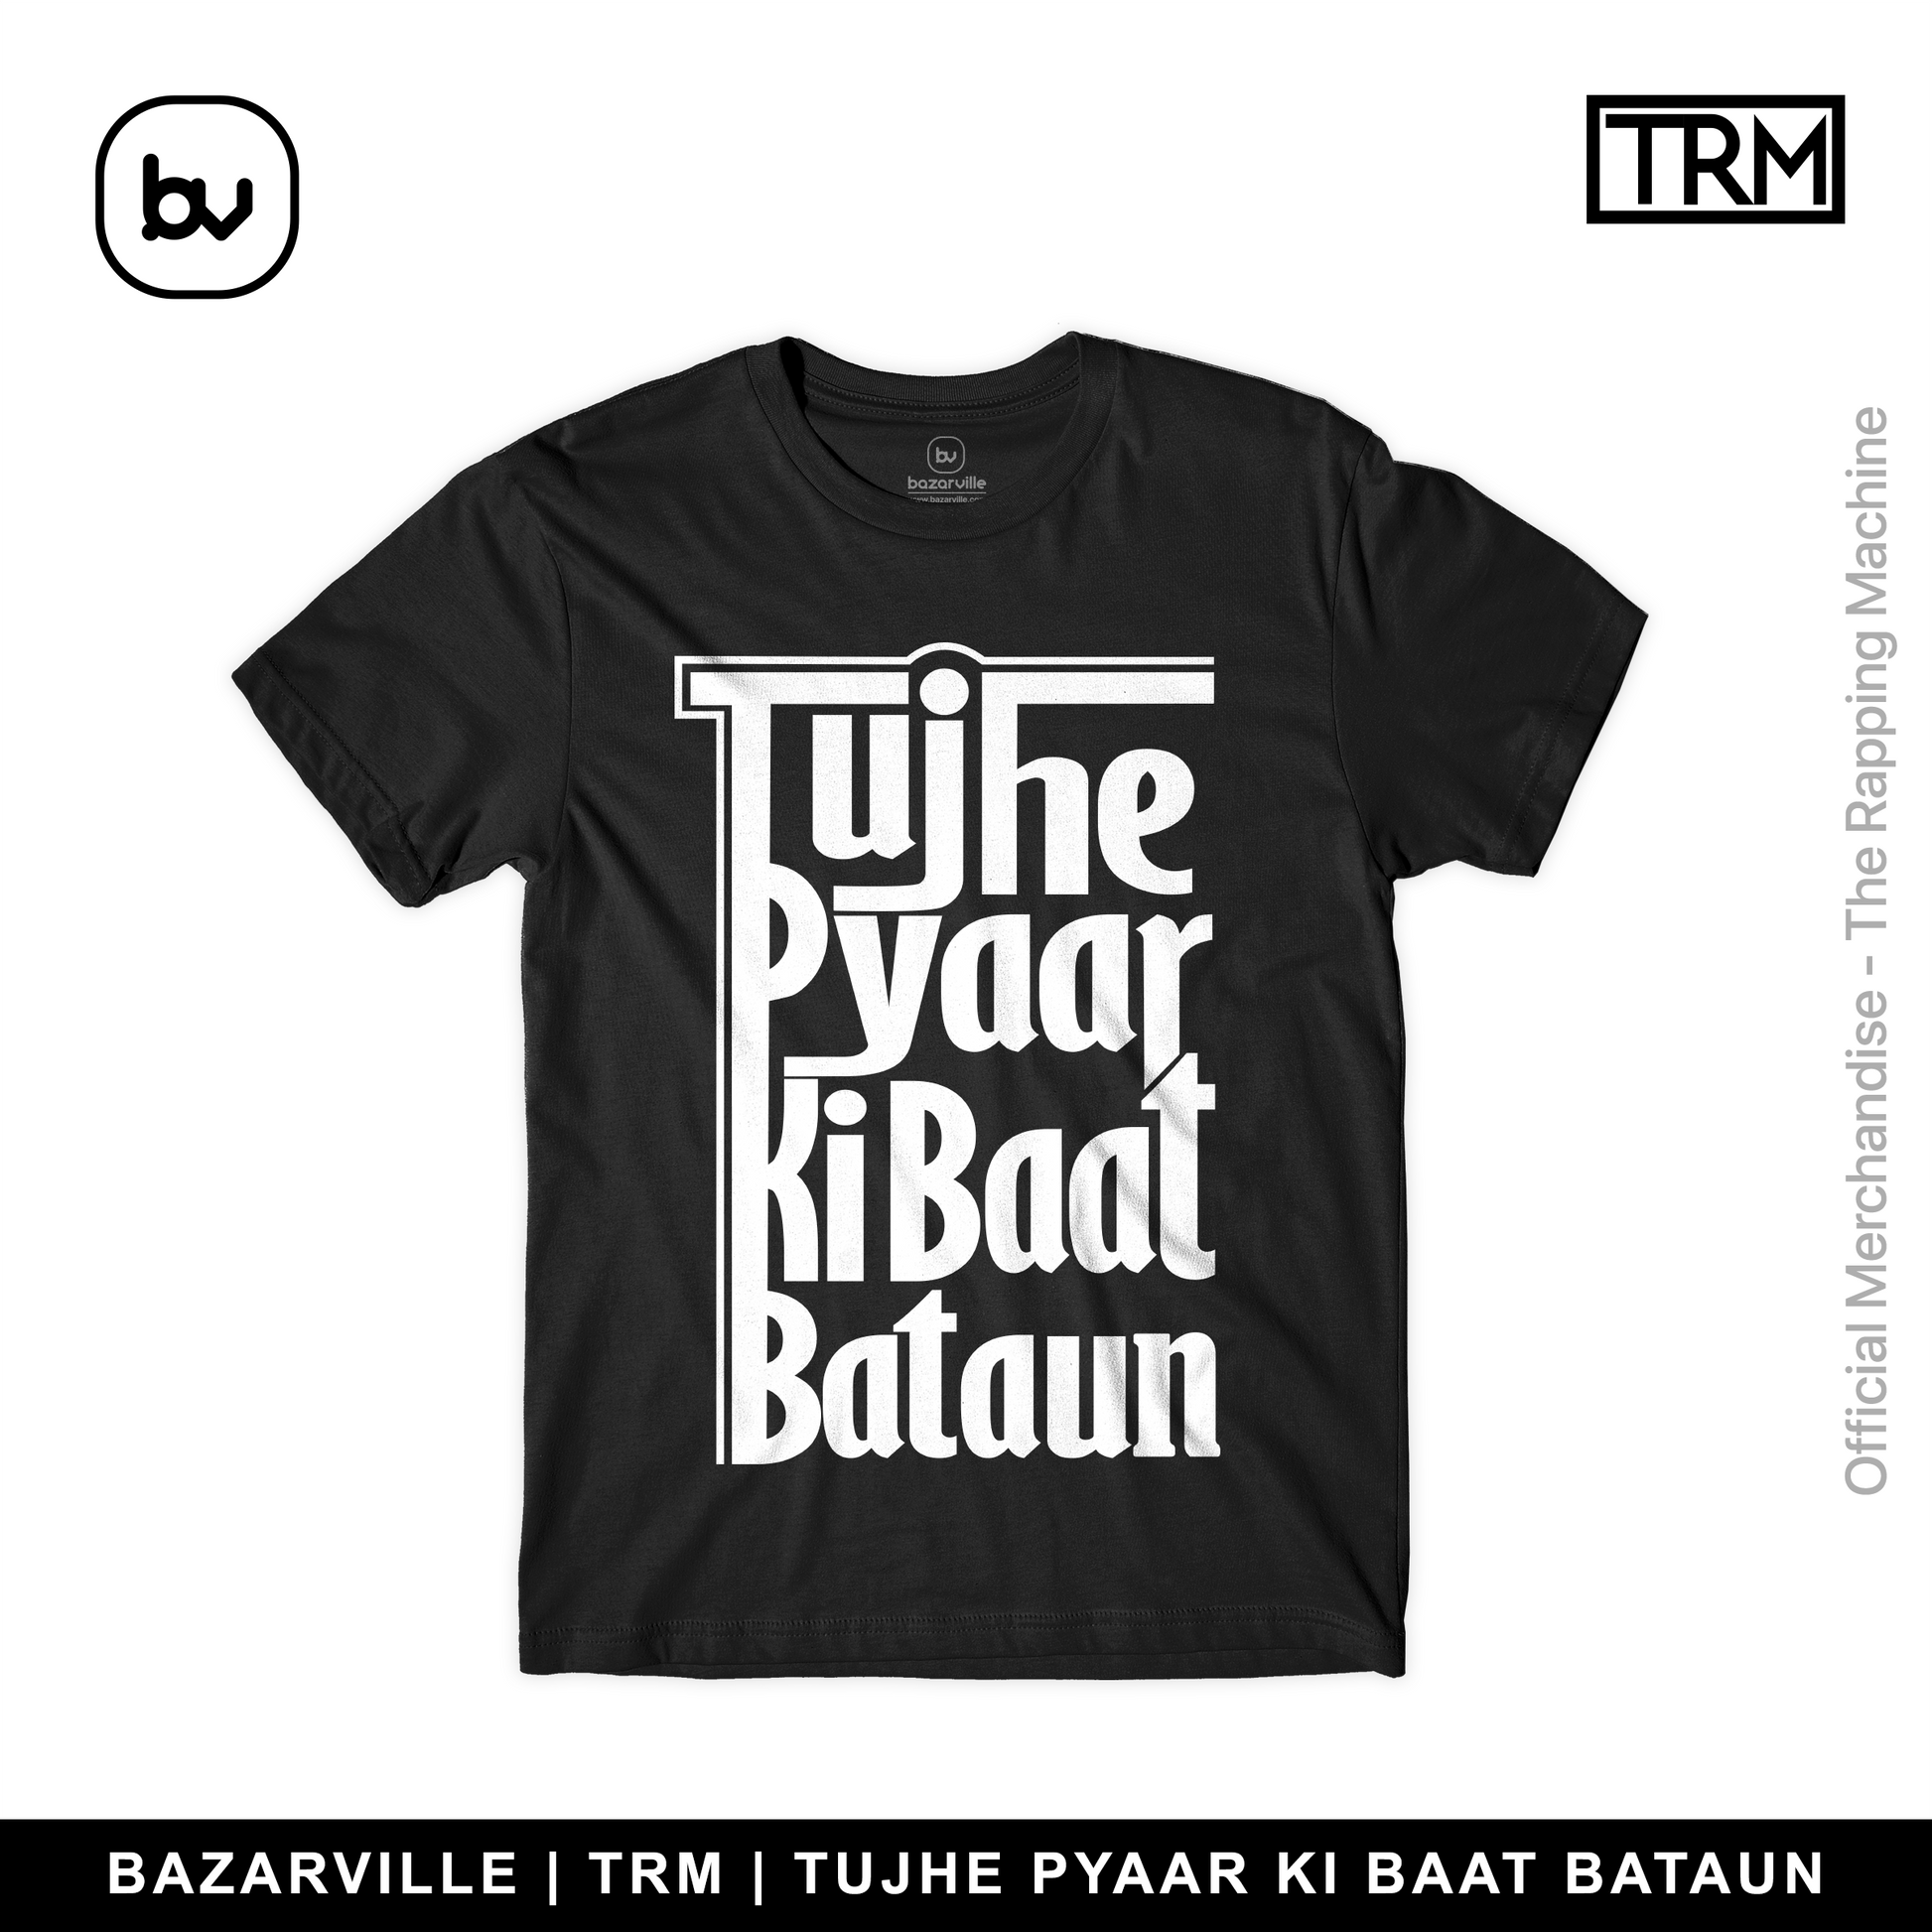 Bazarville TRM S TUJHE PYAR KI BAAT BATAU-BLACK